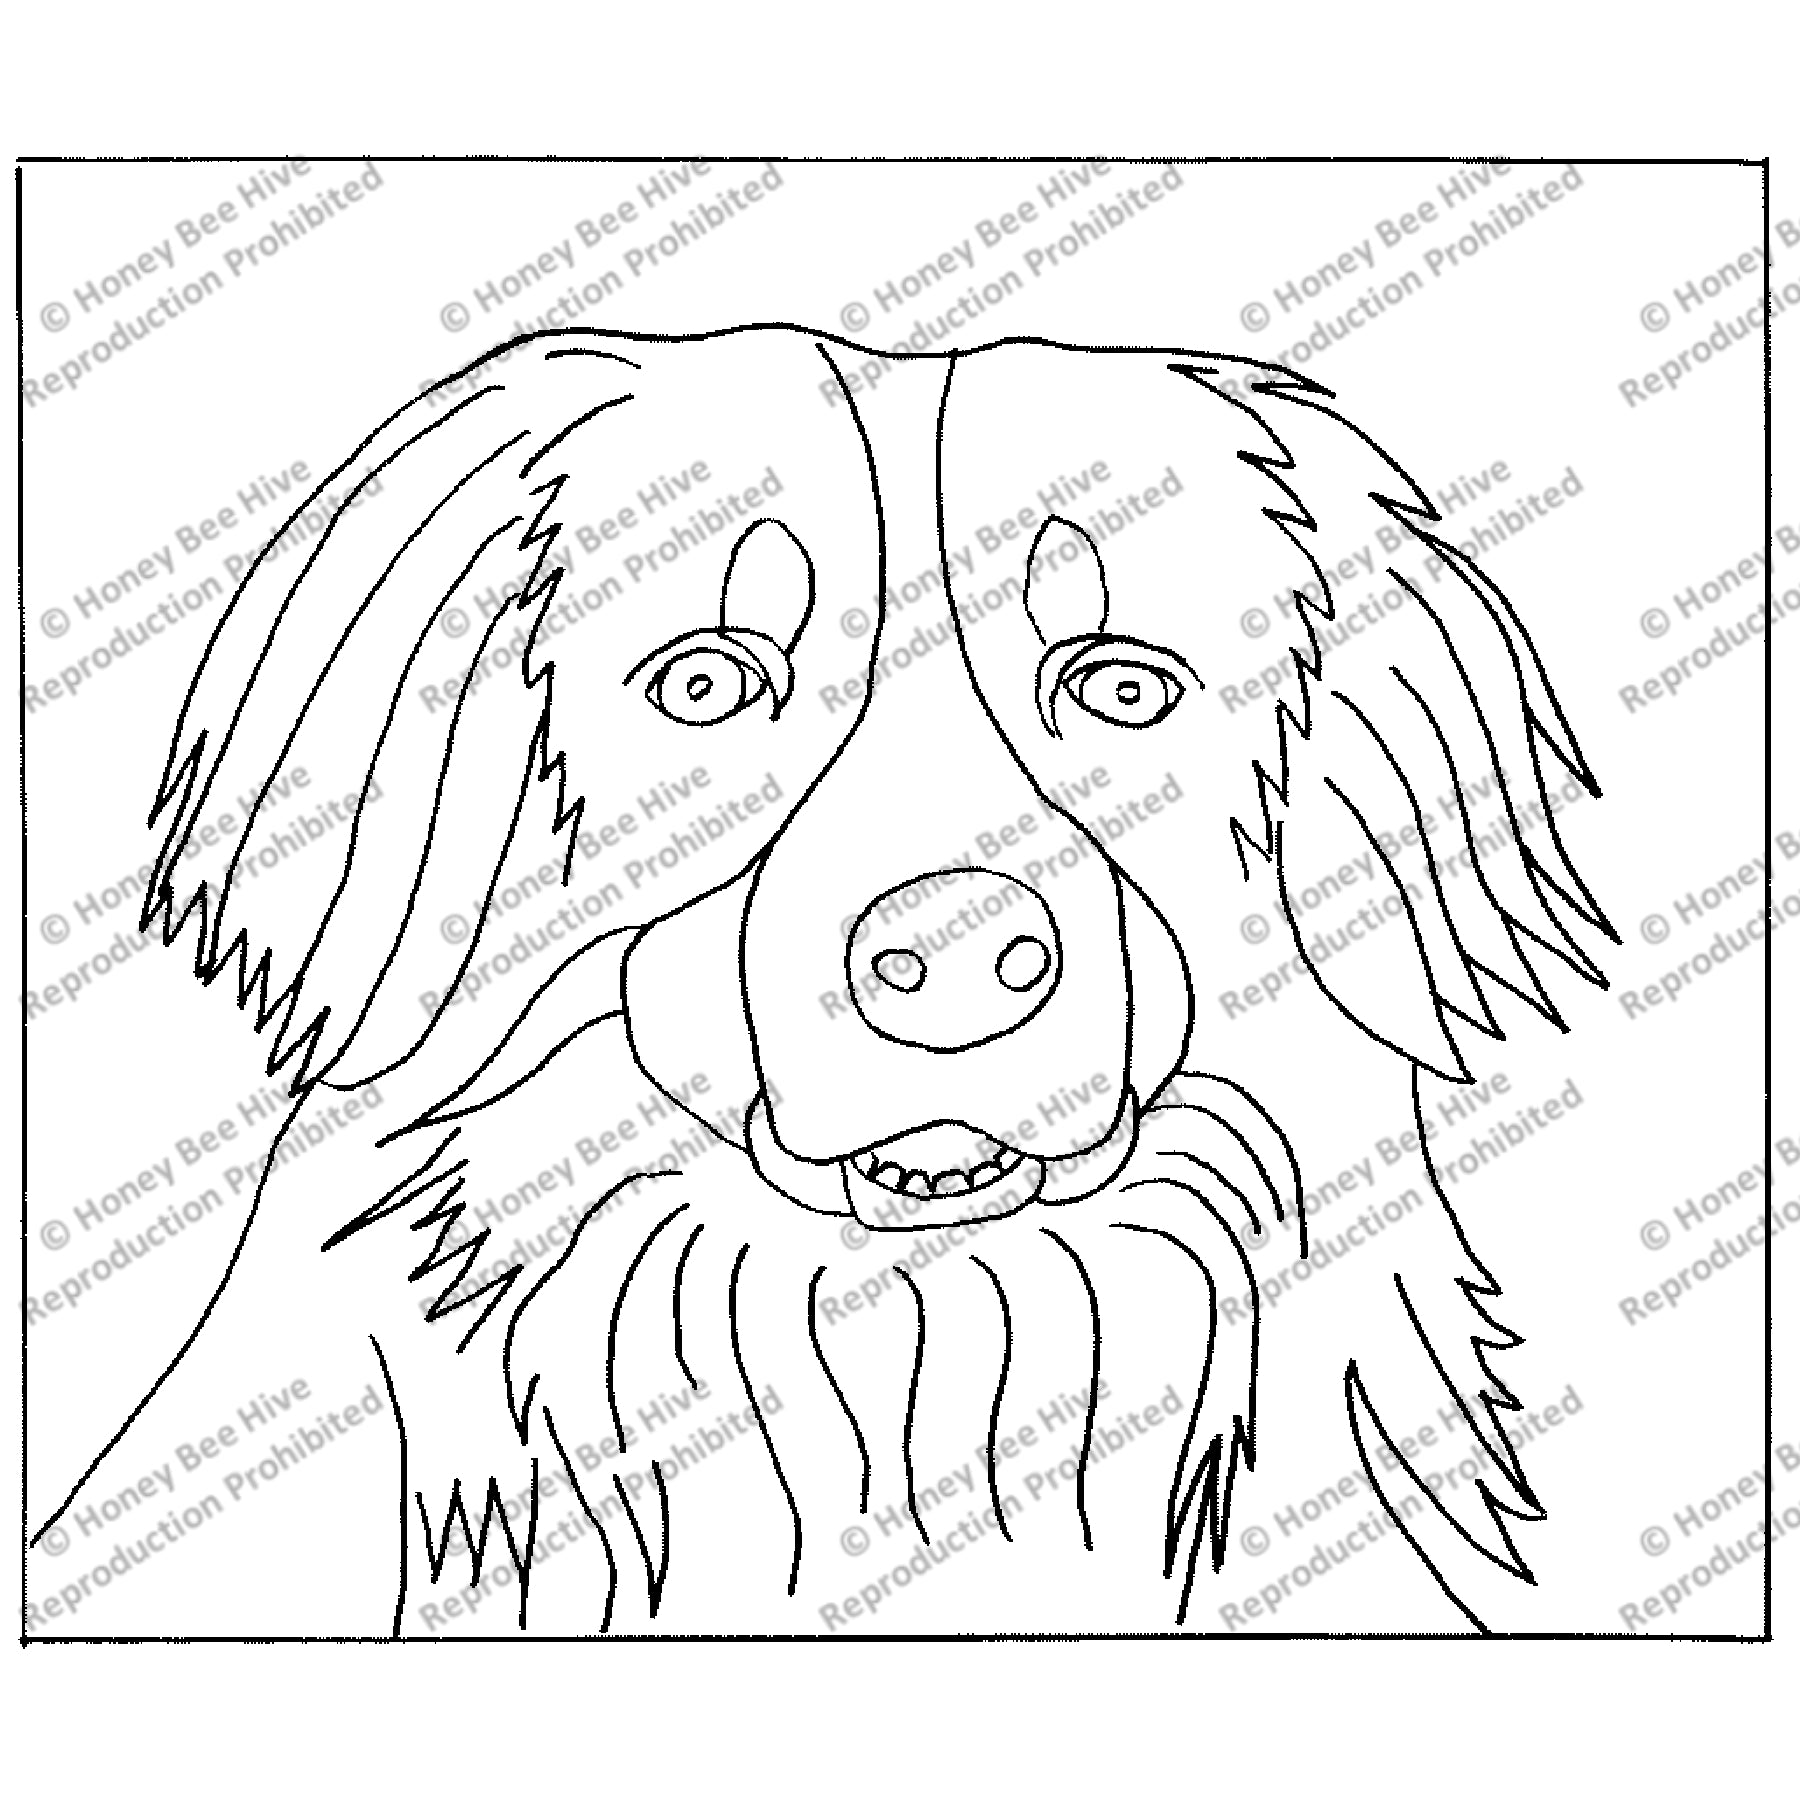 Bernese Mountain Dog, rug hooking pattern